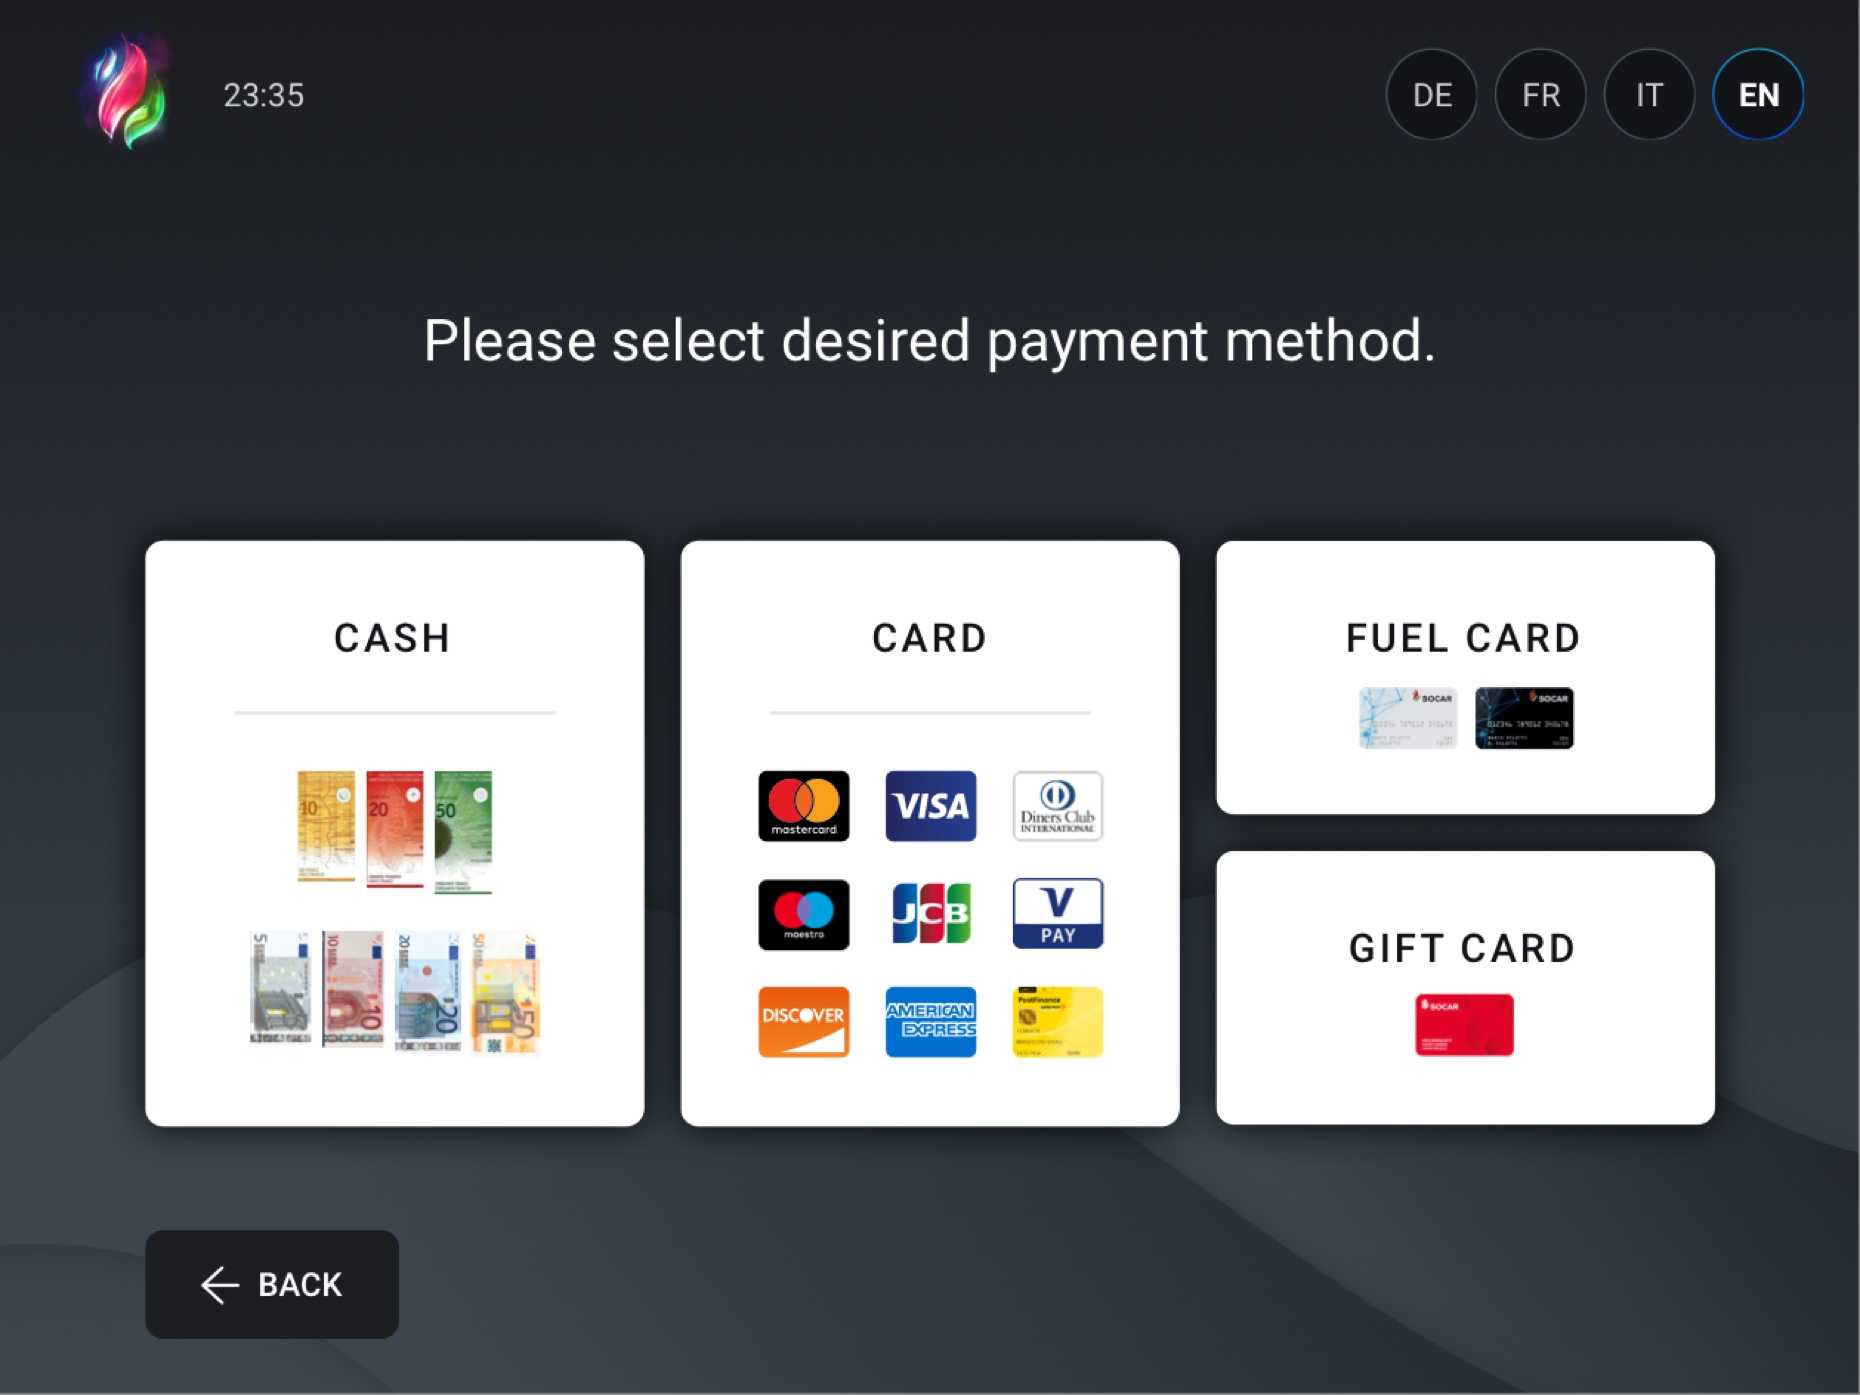 UI ontwerp voor embedded systeem waar gebruikers de betaalmethode selecteren in de self checkout ervaring